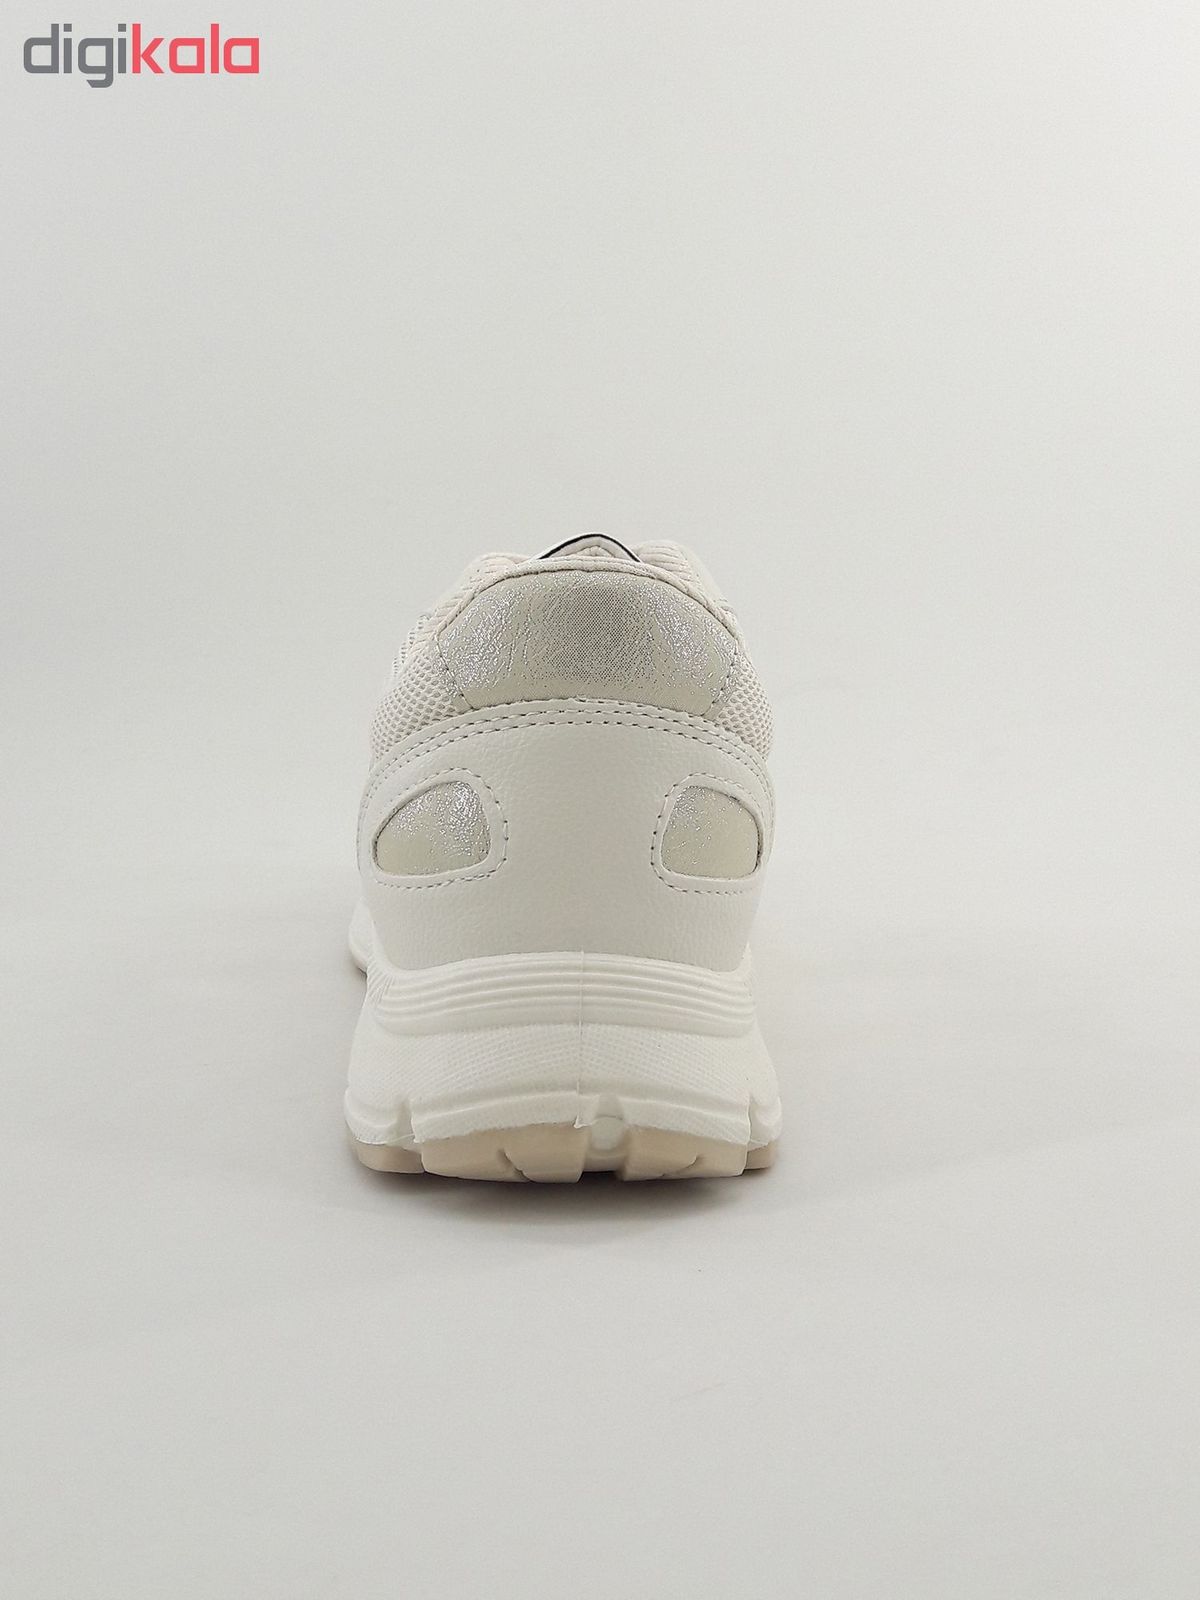 کفش مخصوص پیاده روی زنانه مدل Hologram silv-01